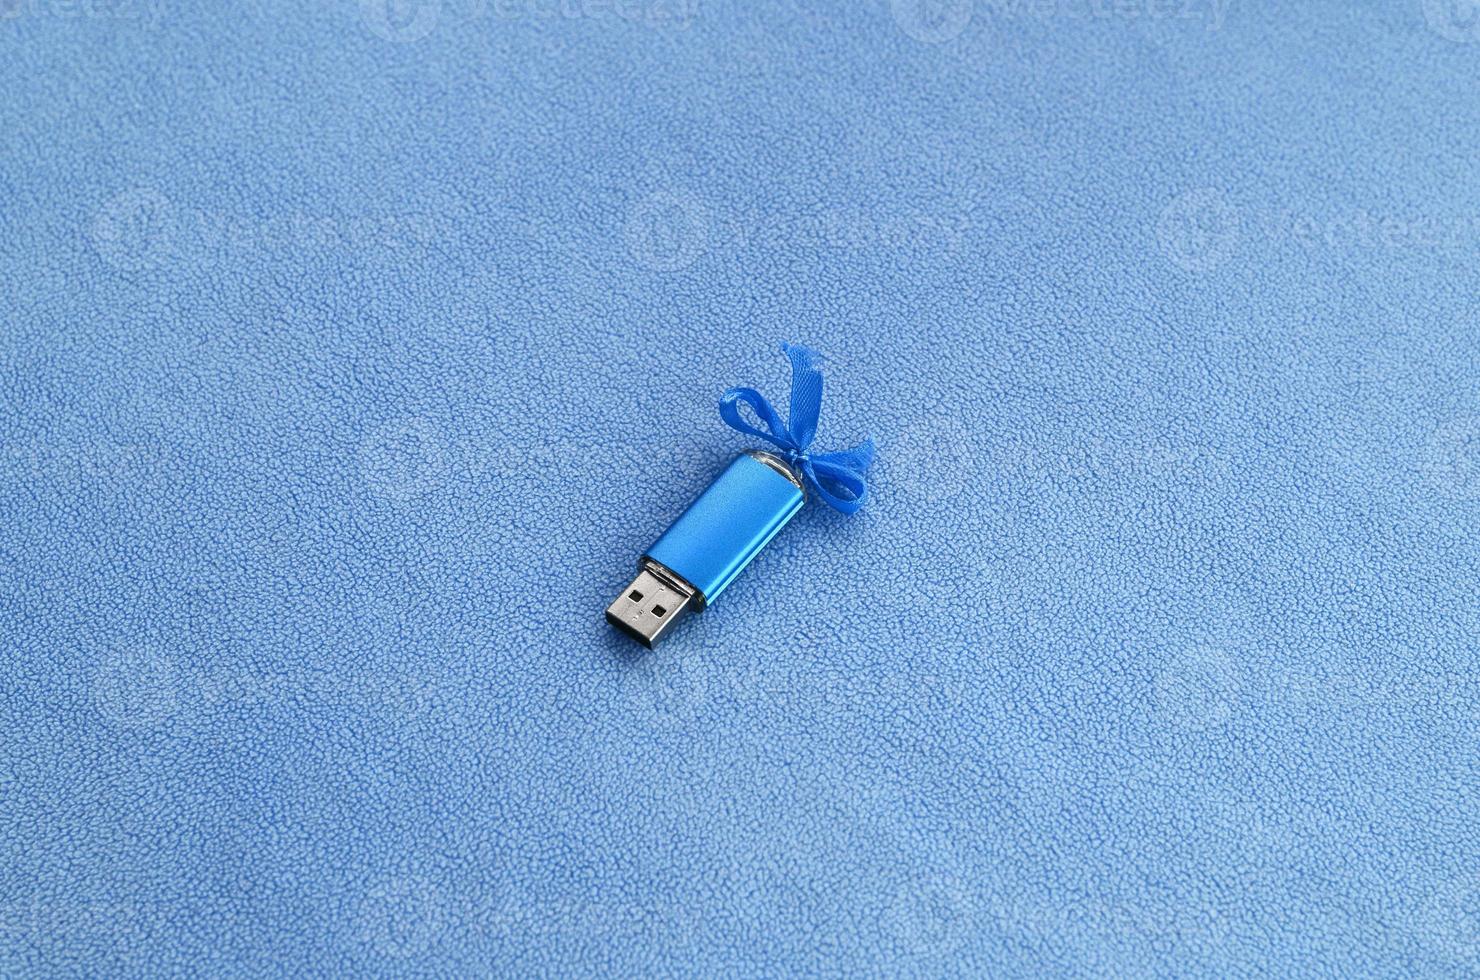 cartão de memória flash usb azul brilhante com um laço azul repousa sobre um cobertor de tecido de lã azul claro macio e peludo. design de presente feminino clássico para um cartão de memória foto